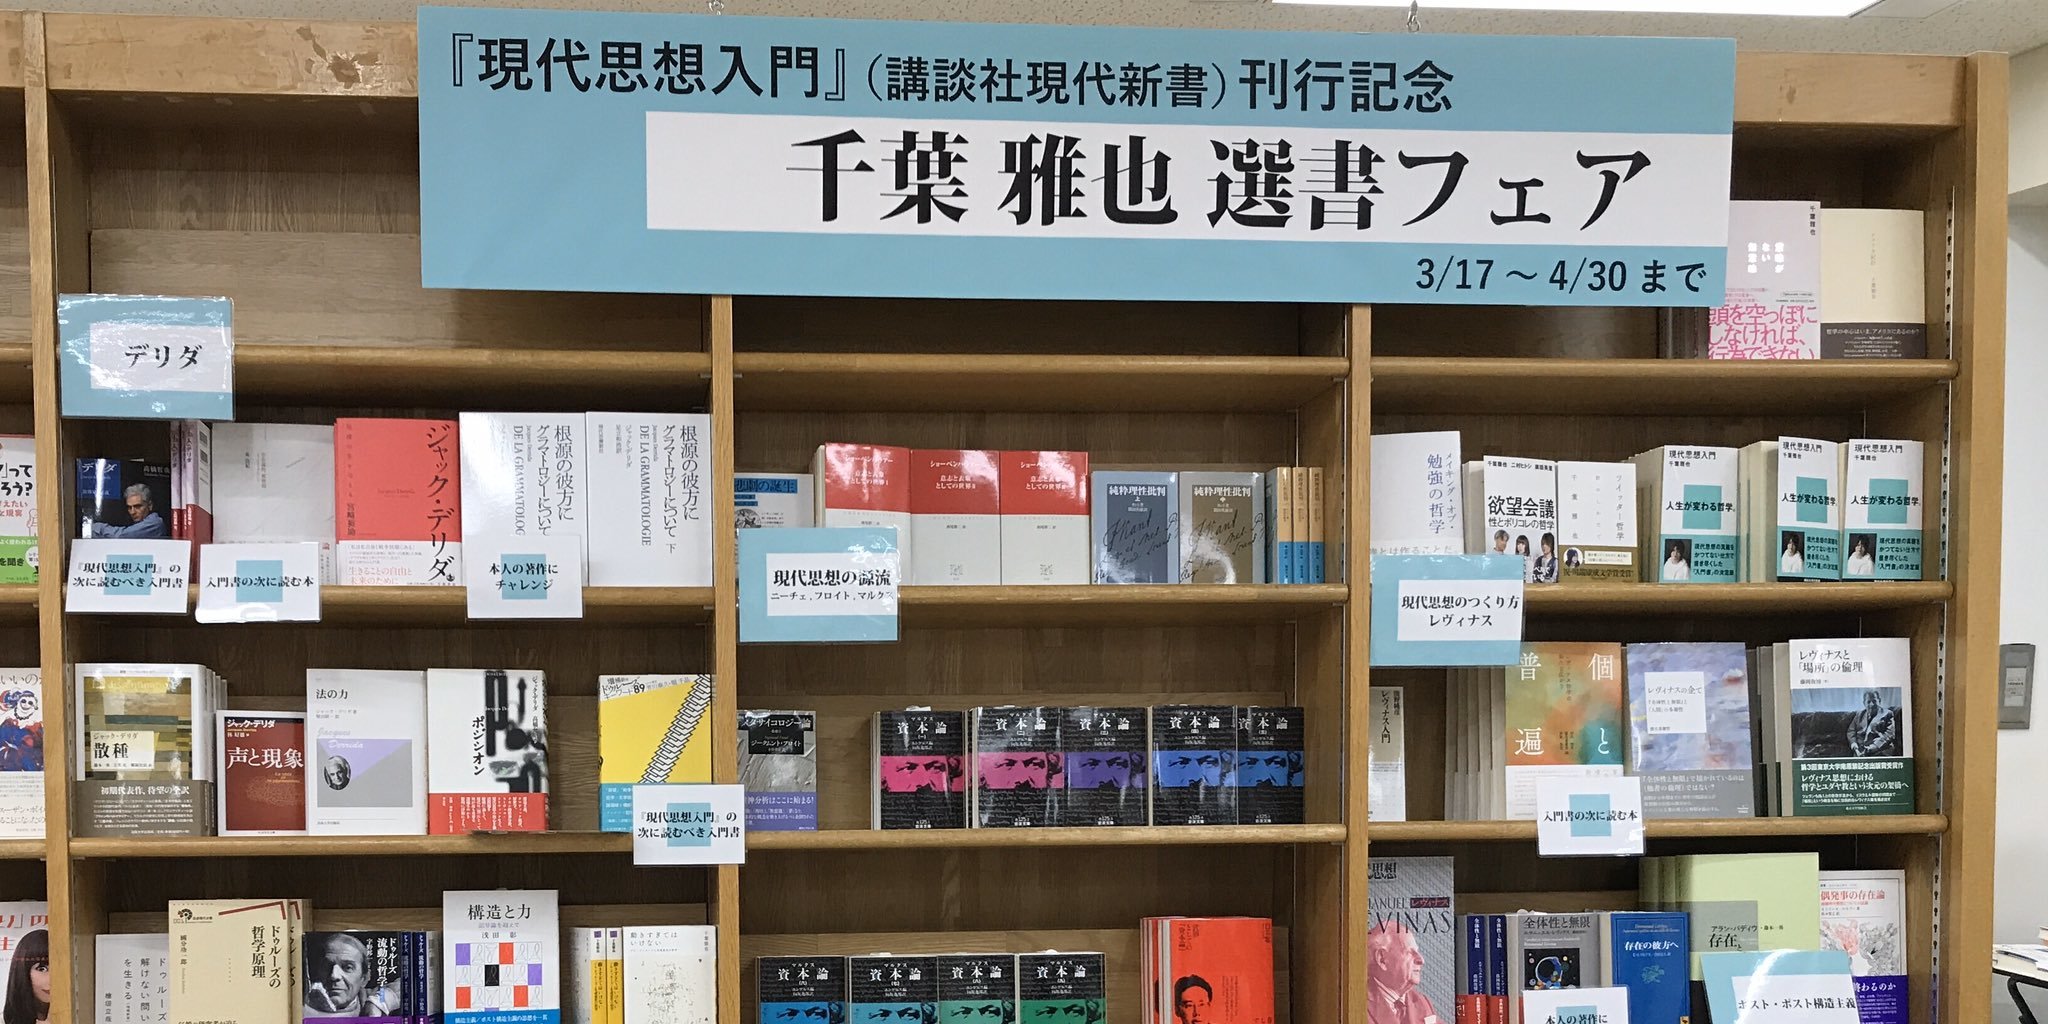 东京某书店的千叶雅也选书角. 图片来自网络.